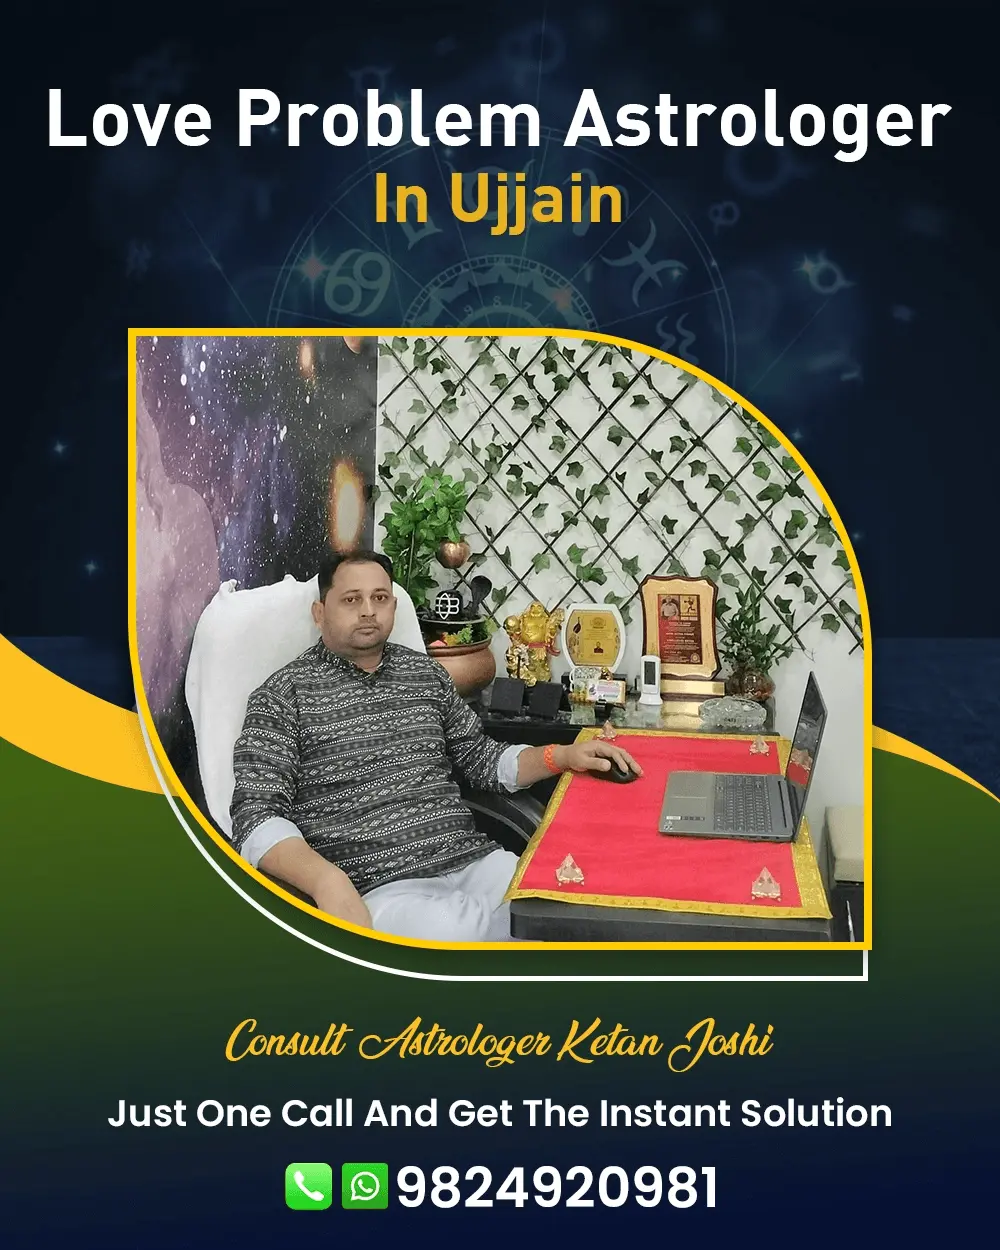 Love Problem Astrologer In Ujjain